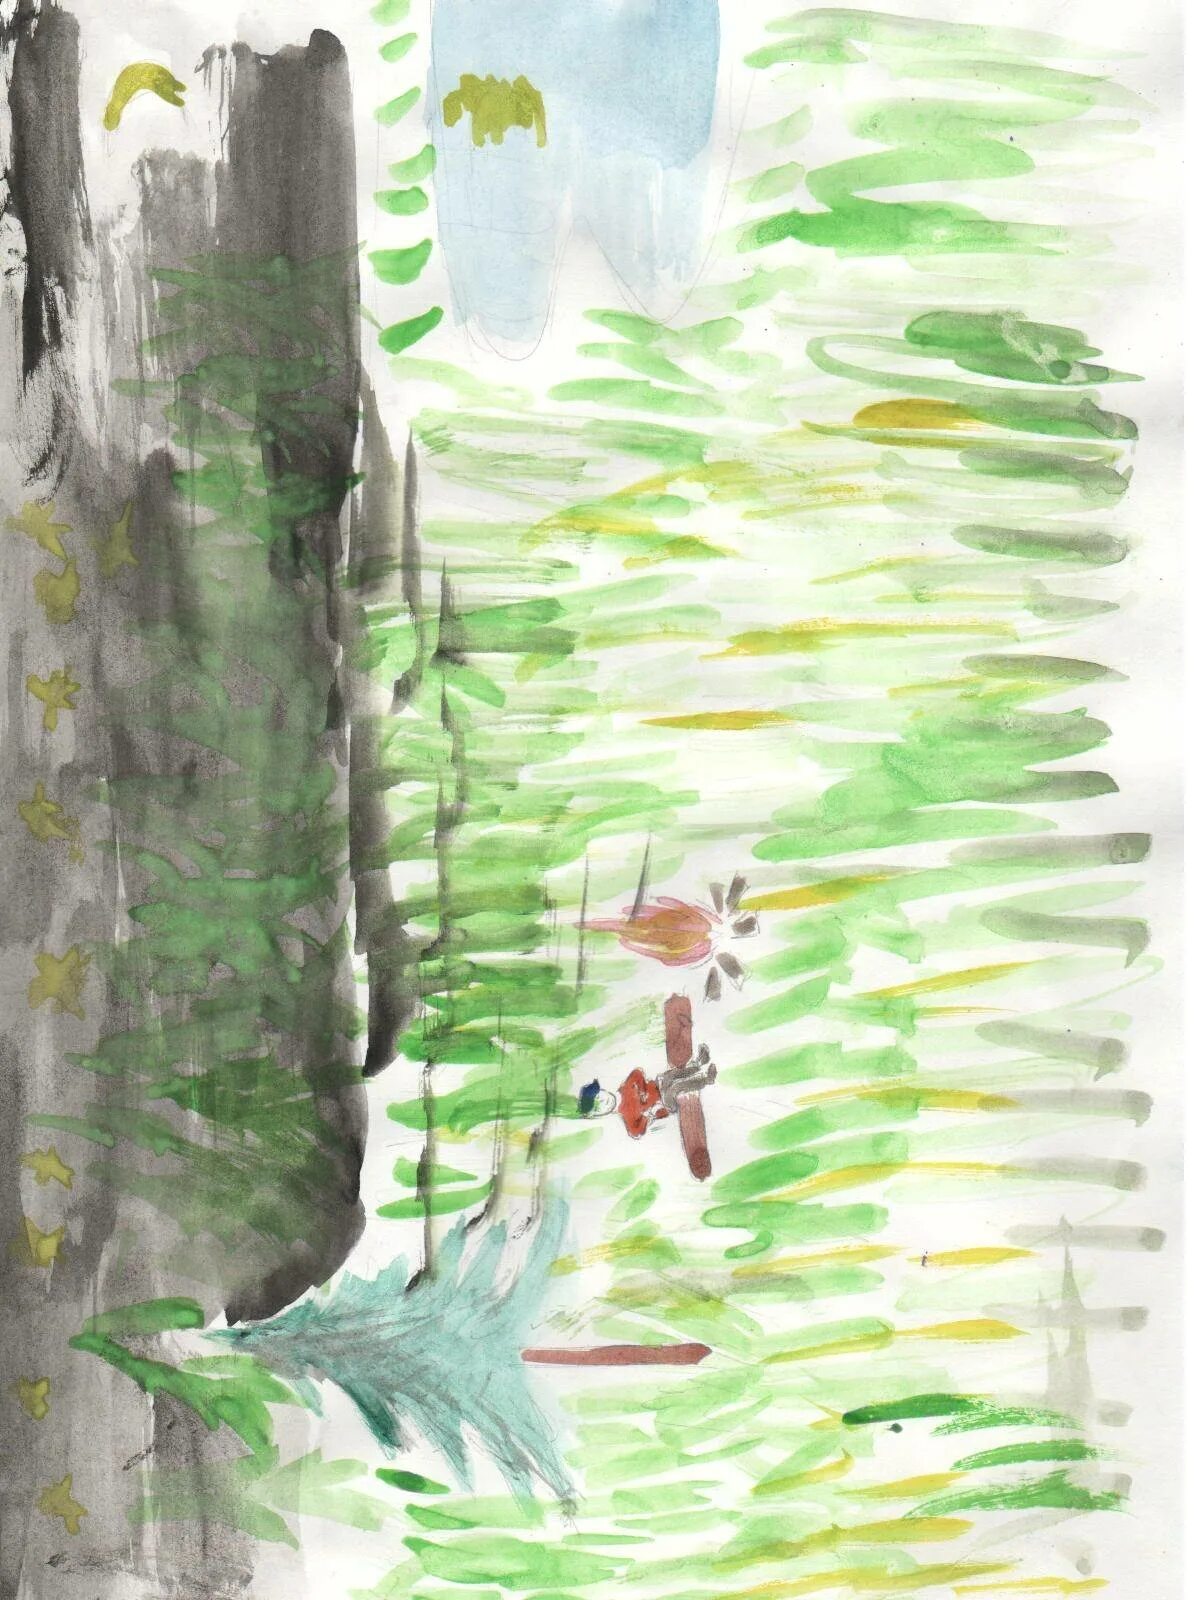 Иллюстрация к эпизоду васюткино озеро. Иллюстрация Васюткино озеро 5 класс. Васюткино озеро 5 класс. Иллюстрация к сказке Васюткино озеро. Астафьев Васюткино озеро иллюстрации.